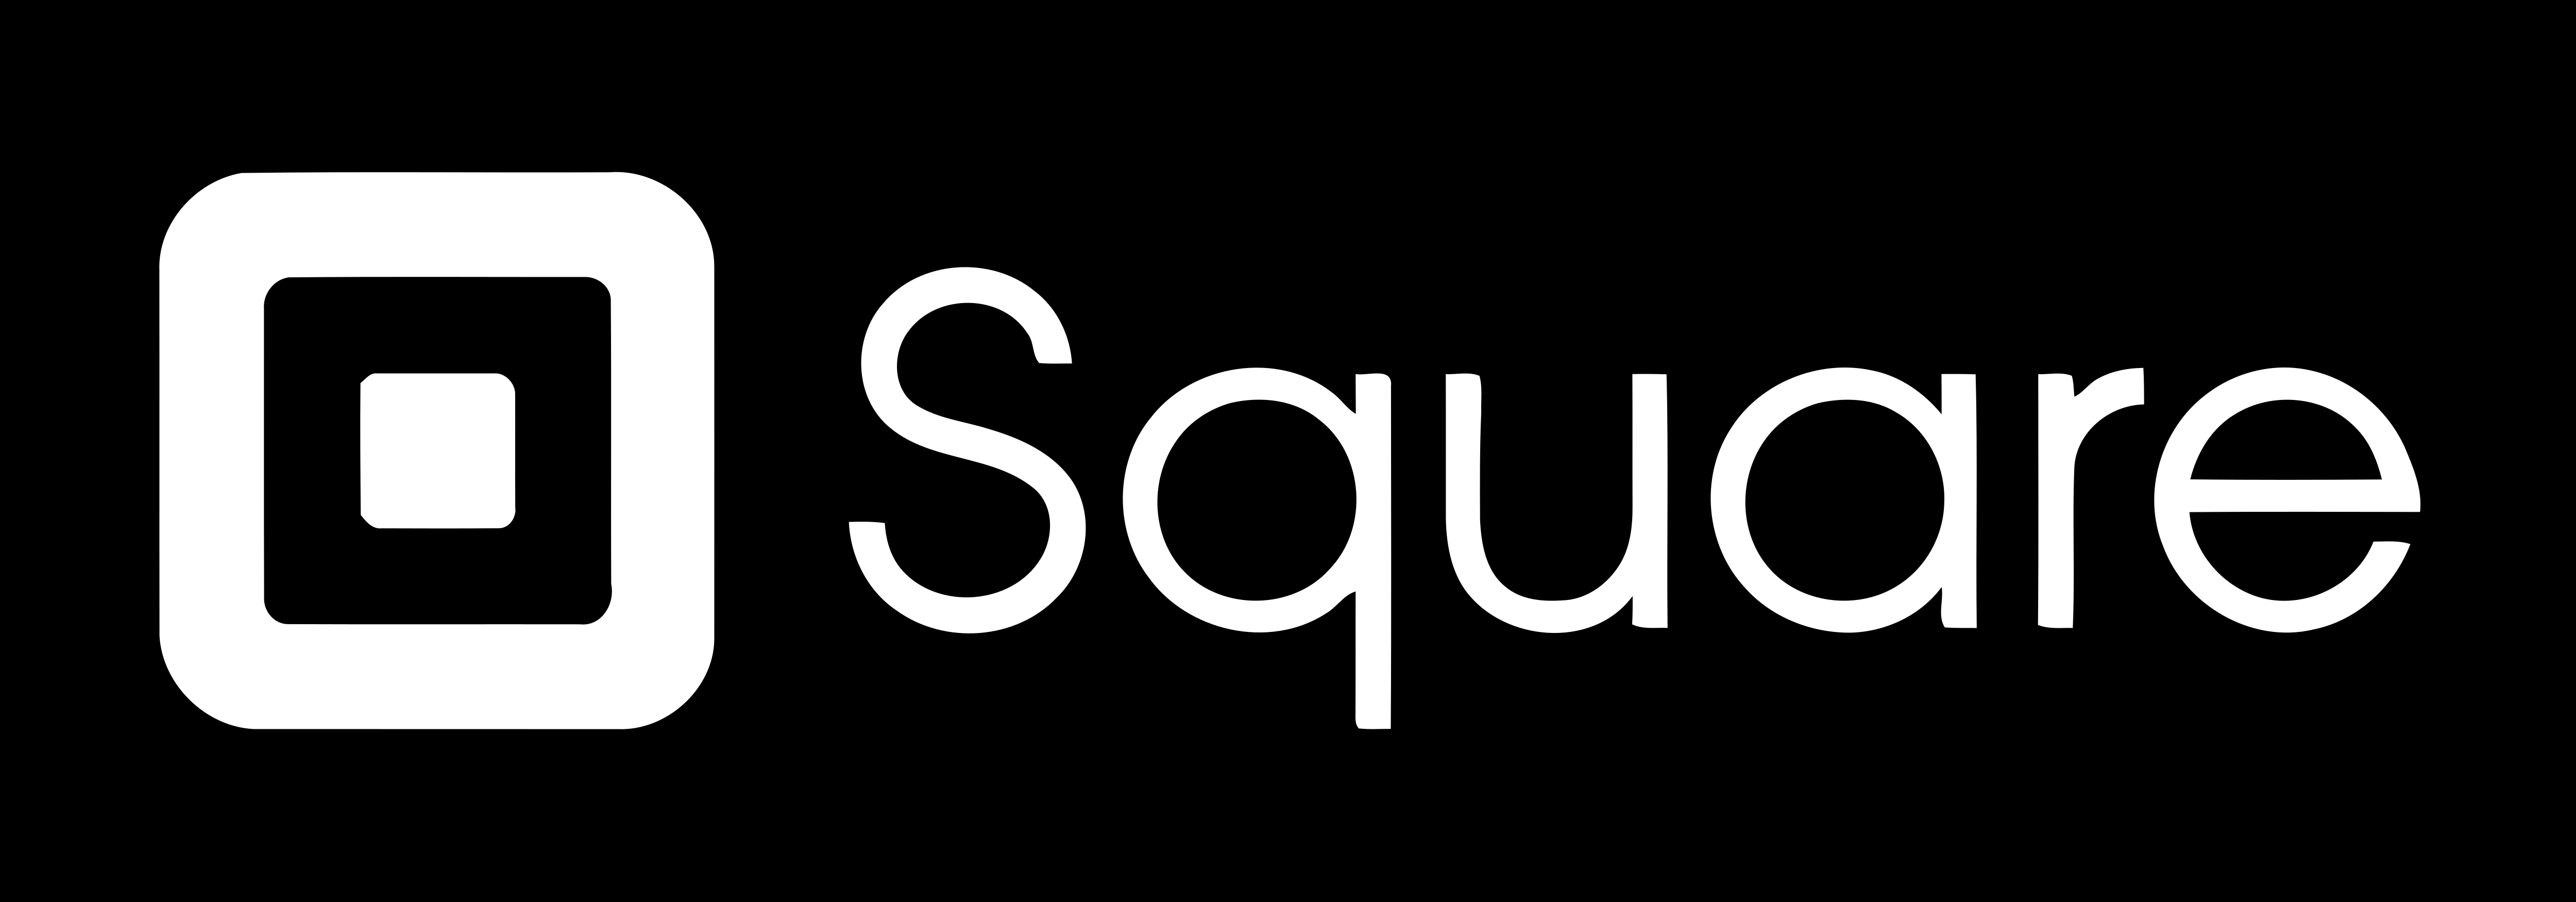 Square – Logos Download